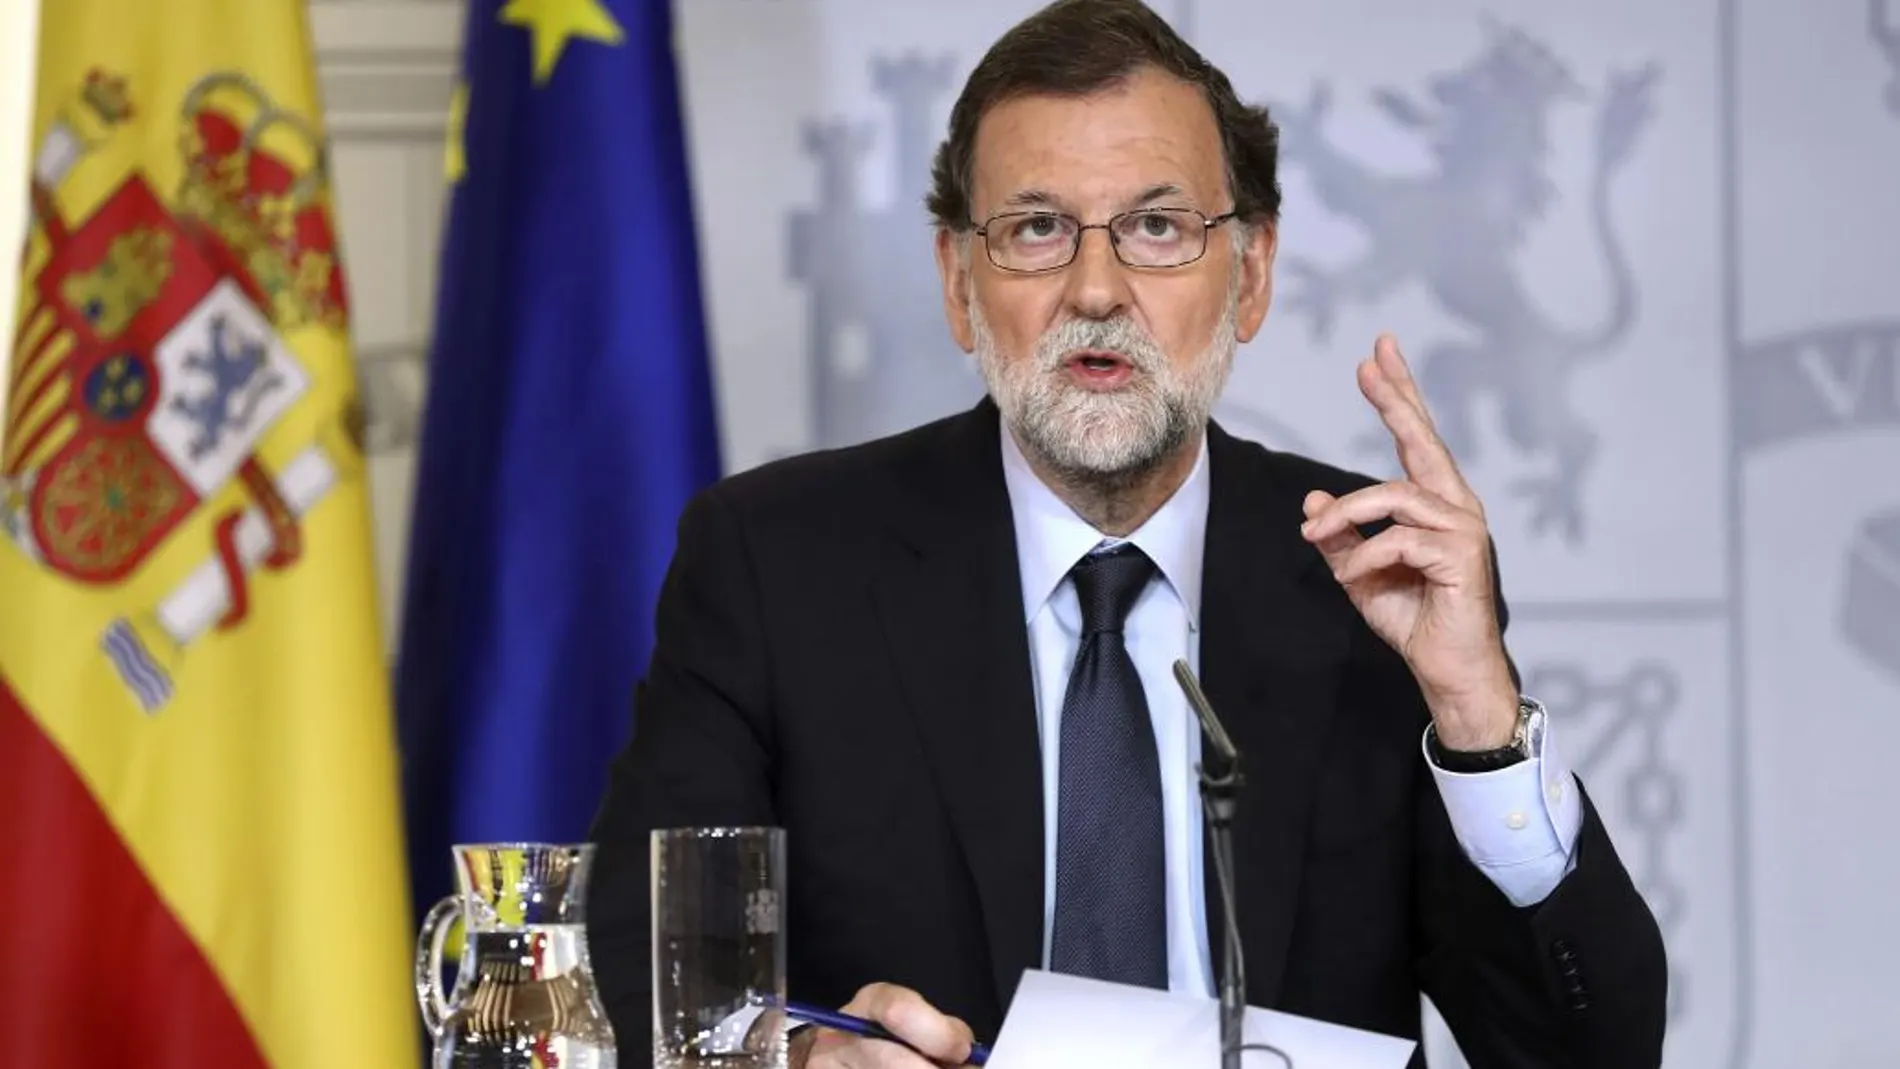 El presidente del Gobierno, Mariano Rajoy, durante la rueda de prensa tras la reunión del Consejo de Ministros en la que ha asegurado que la investigación abierta a raíz de los atentados de Barcelona y de Cambrills "sigue abierta y durará tiempo"